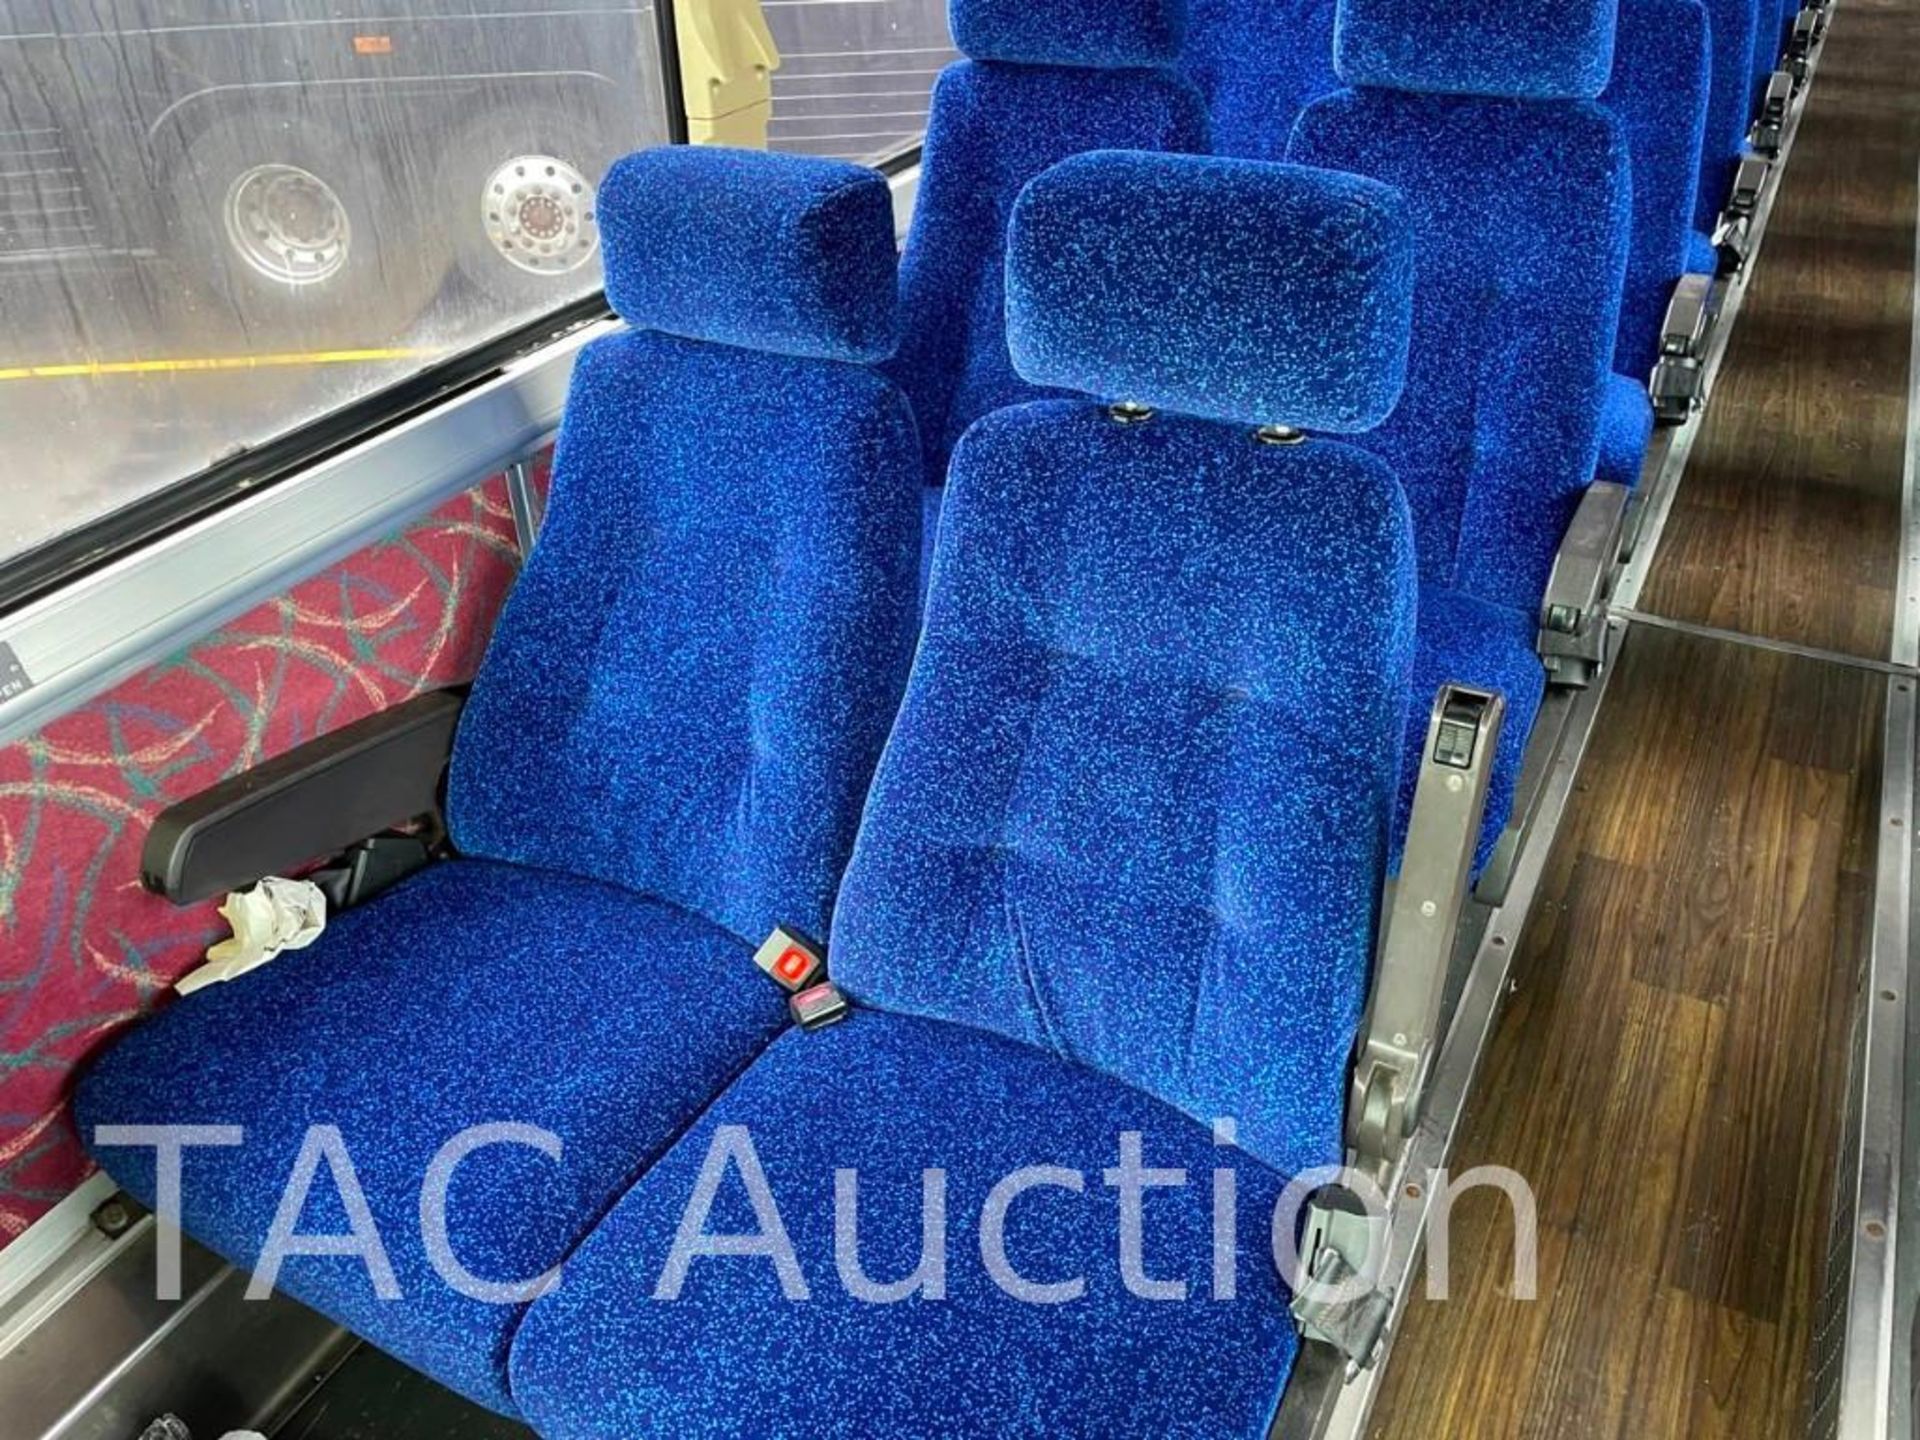 1997 MCI 102-DL3 (45) Passenger Coach Bus - Image 40 of 103